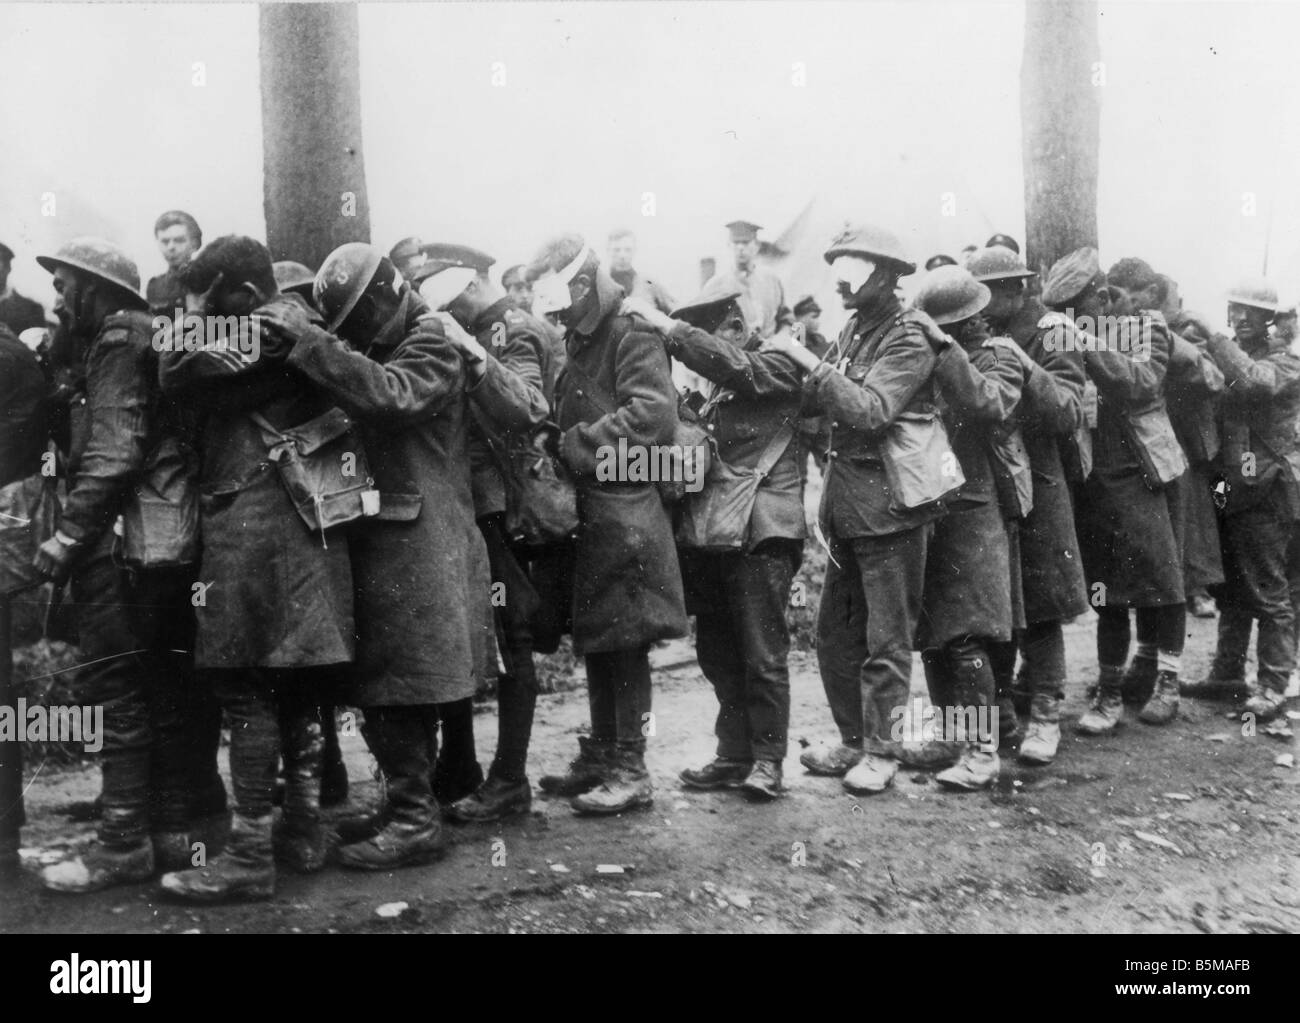 2 G55 W1 1918 24 soldados británicos heridos por bombas lacrimógenas 1918 Historia la Primera Guerra Mundial frente occidental soldados británicos heridos por bombas lacrimógenas Foto de stock